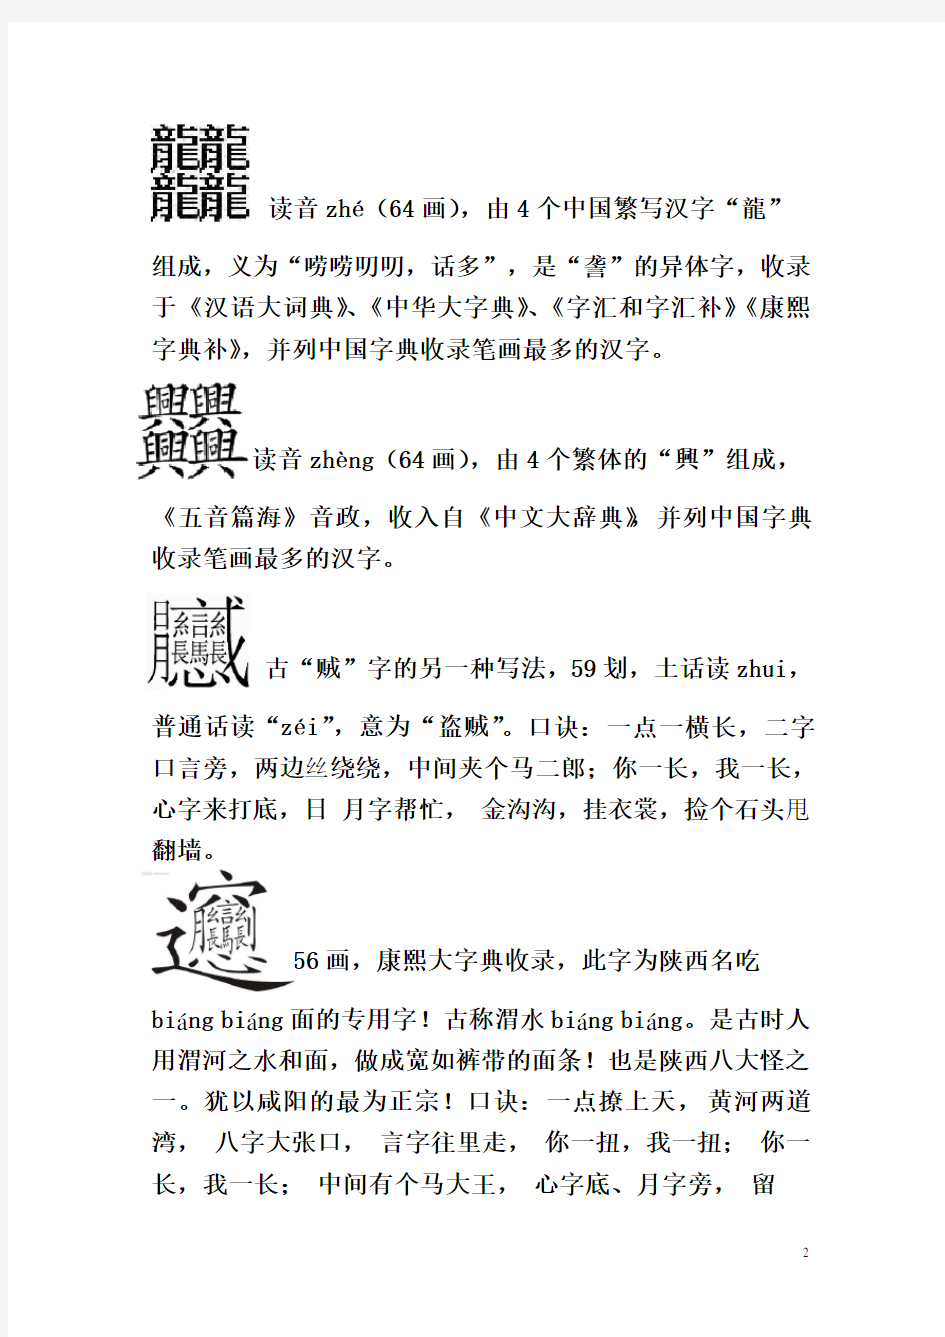 古今393个汉字读音及注释(包括生僻字、难写字、笔画最多的字)